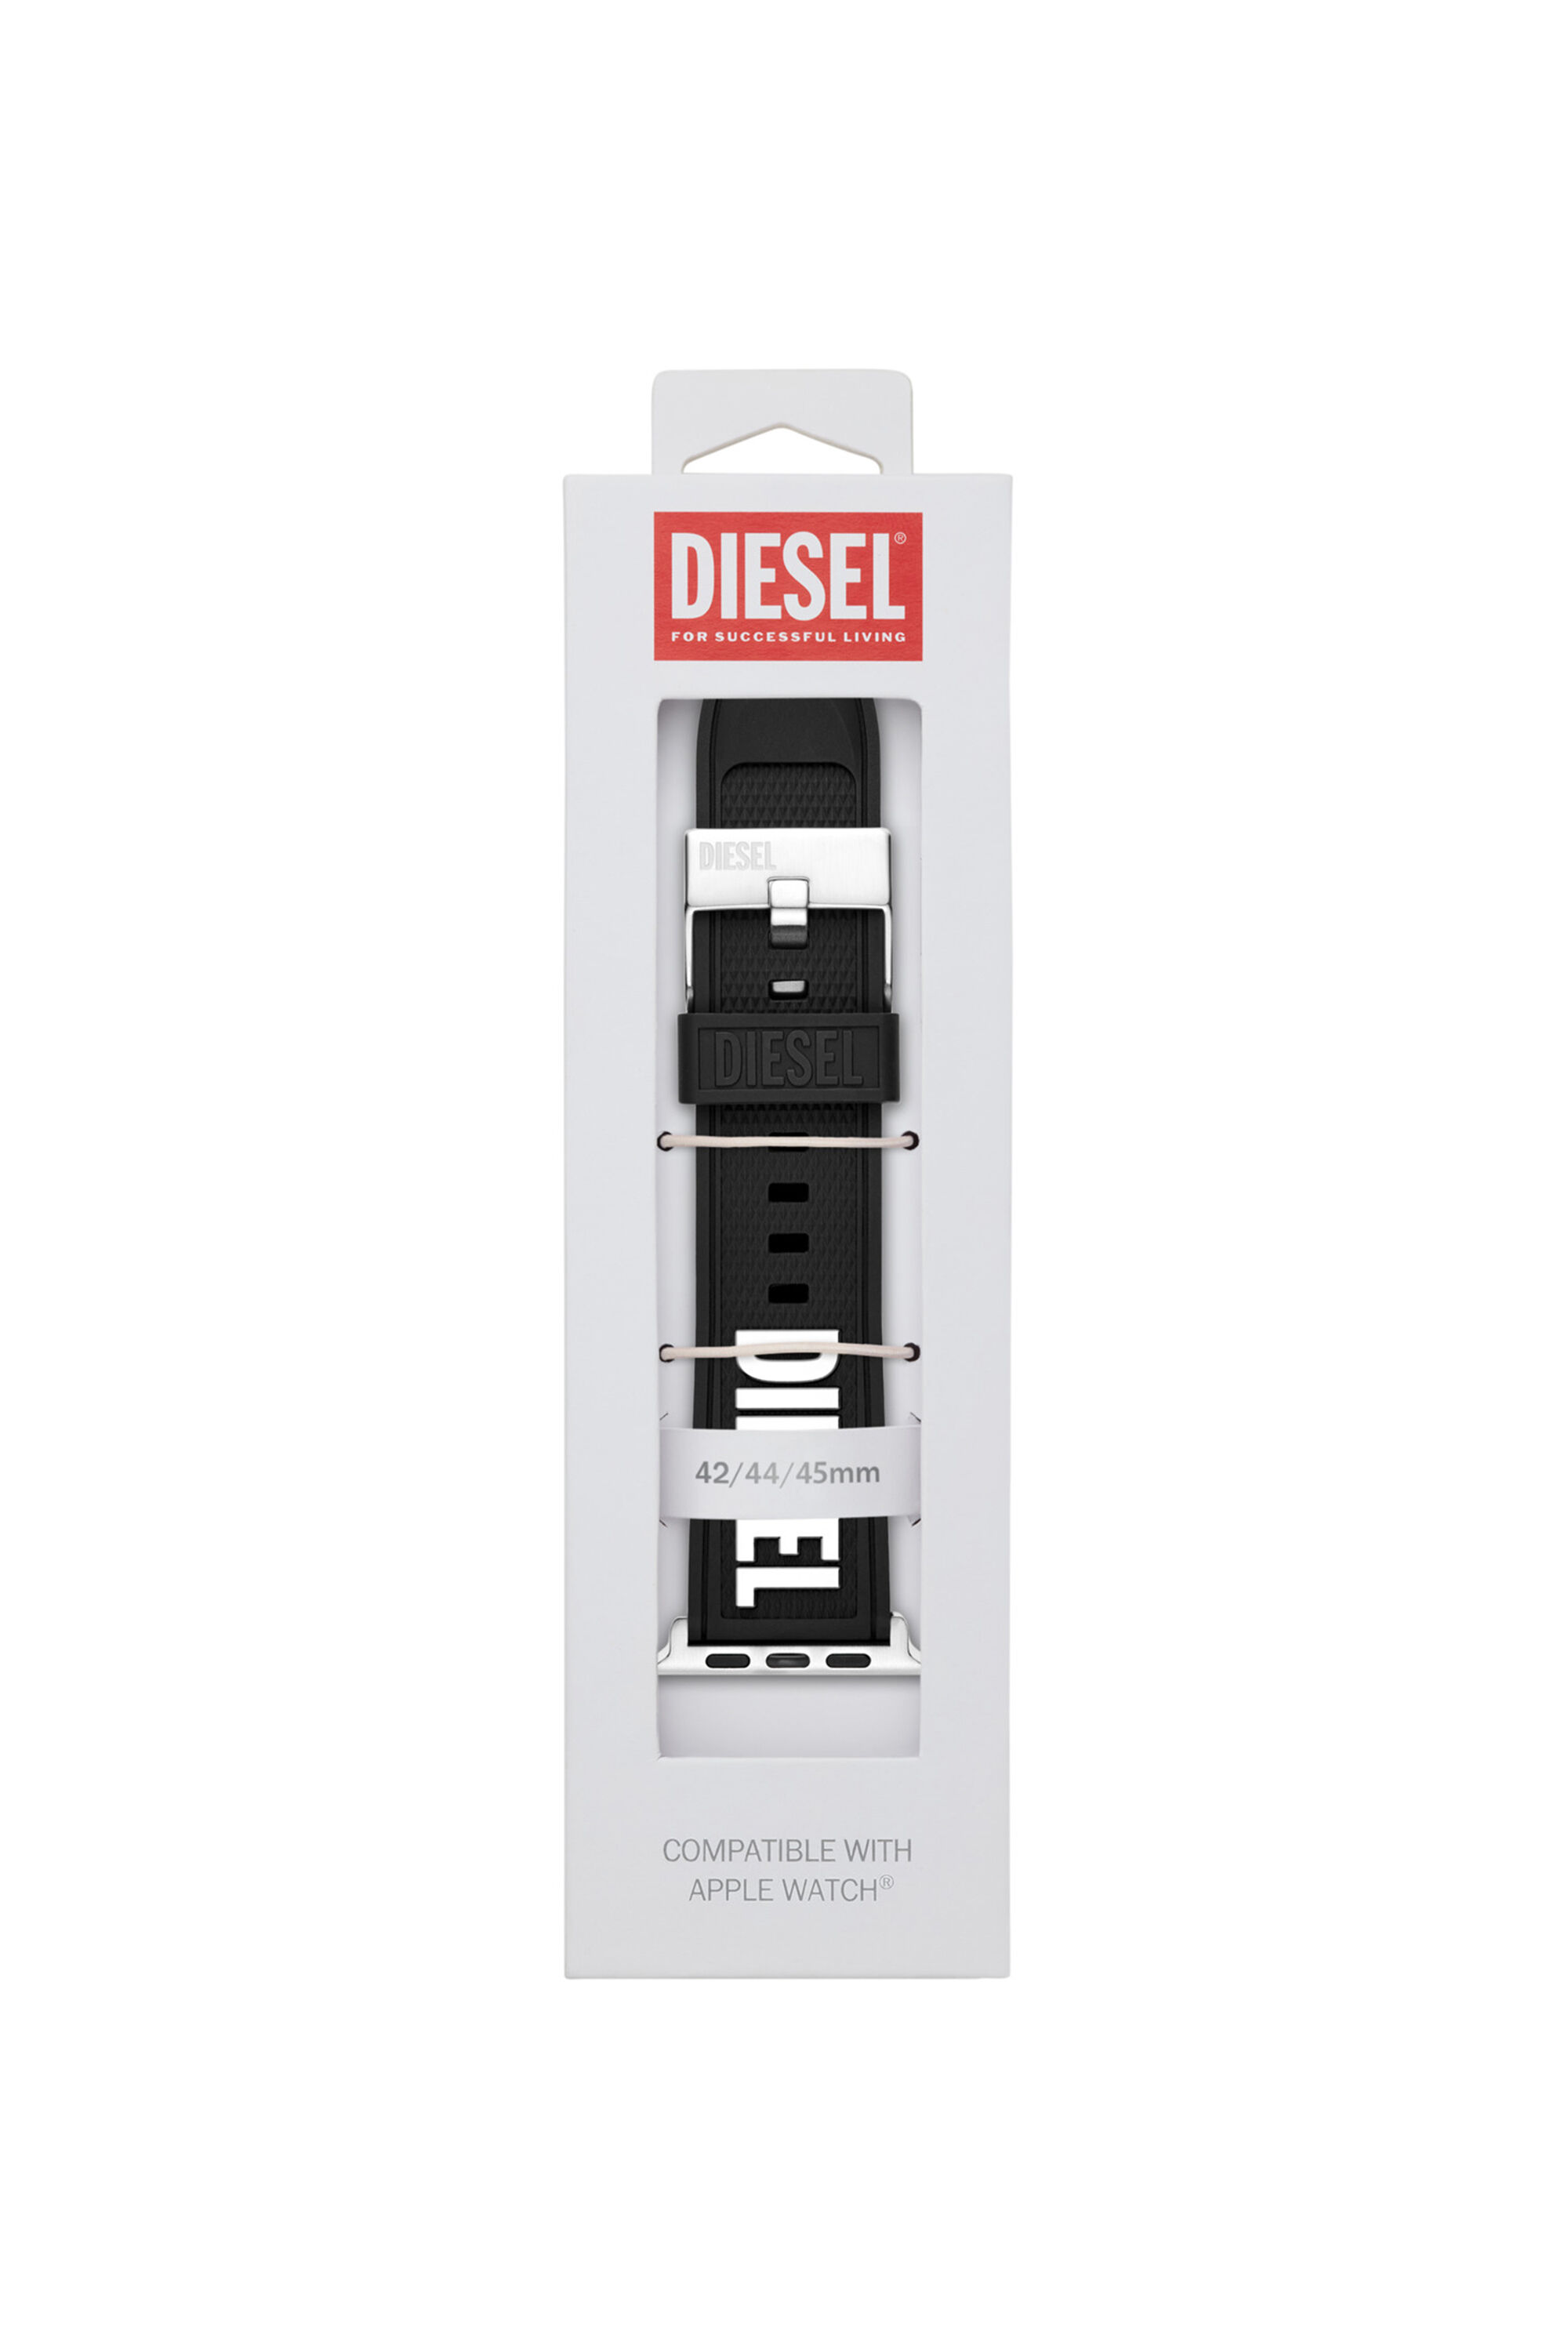 Diesel - DSS011, Schwarz - Image 2